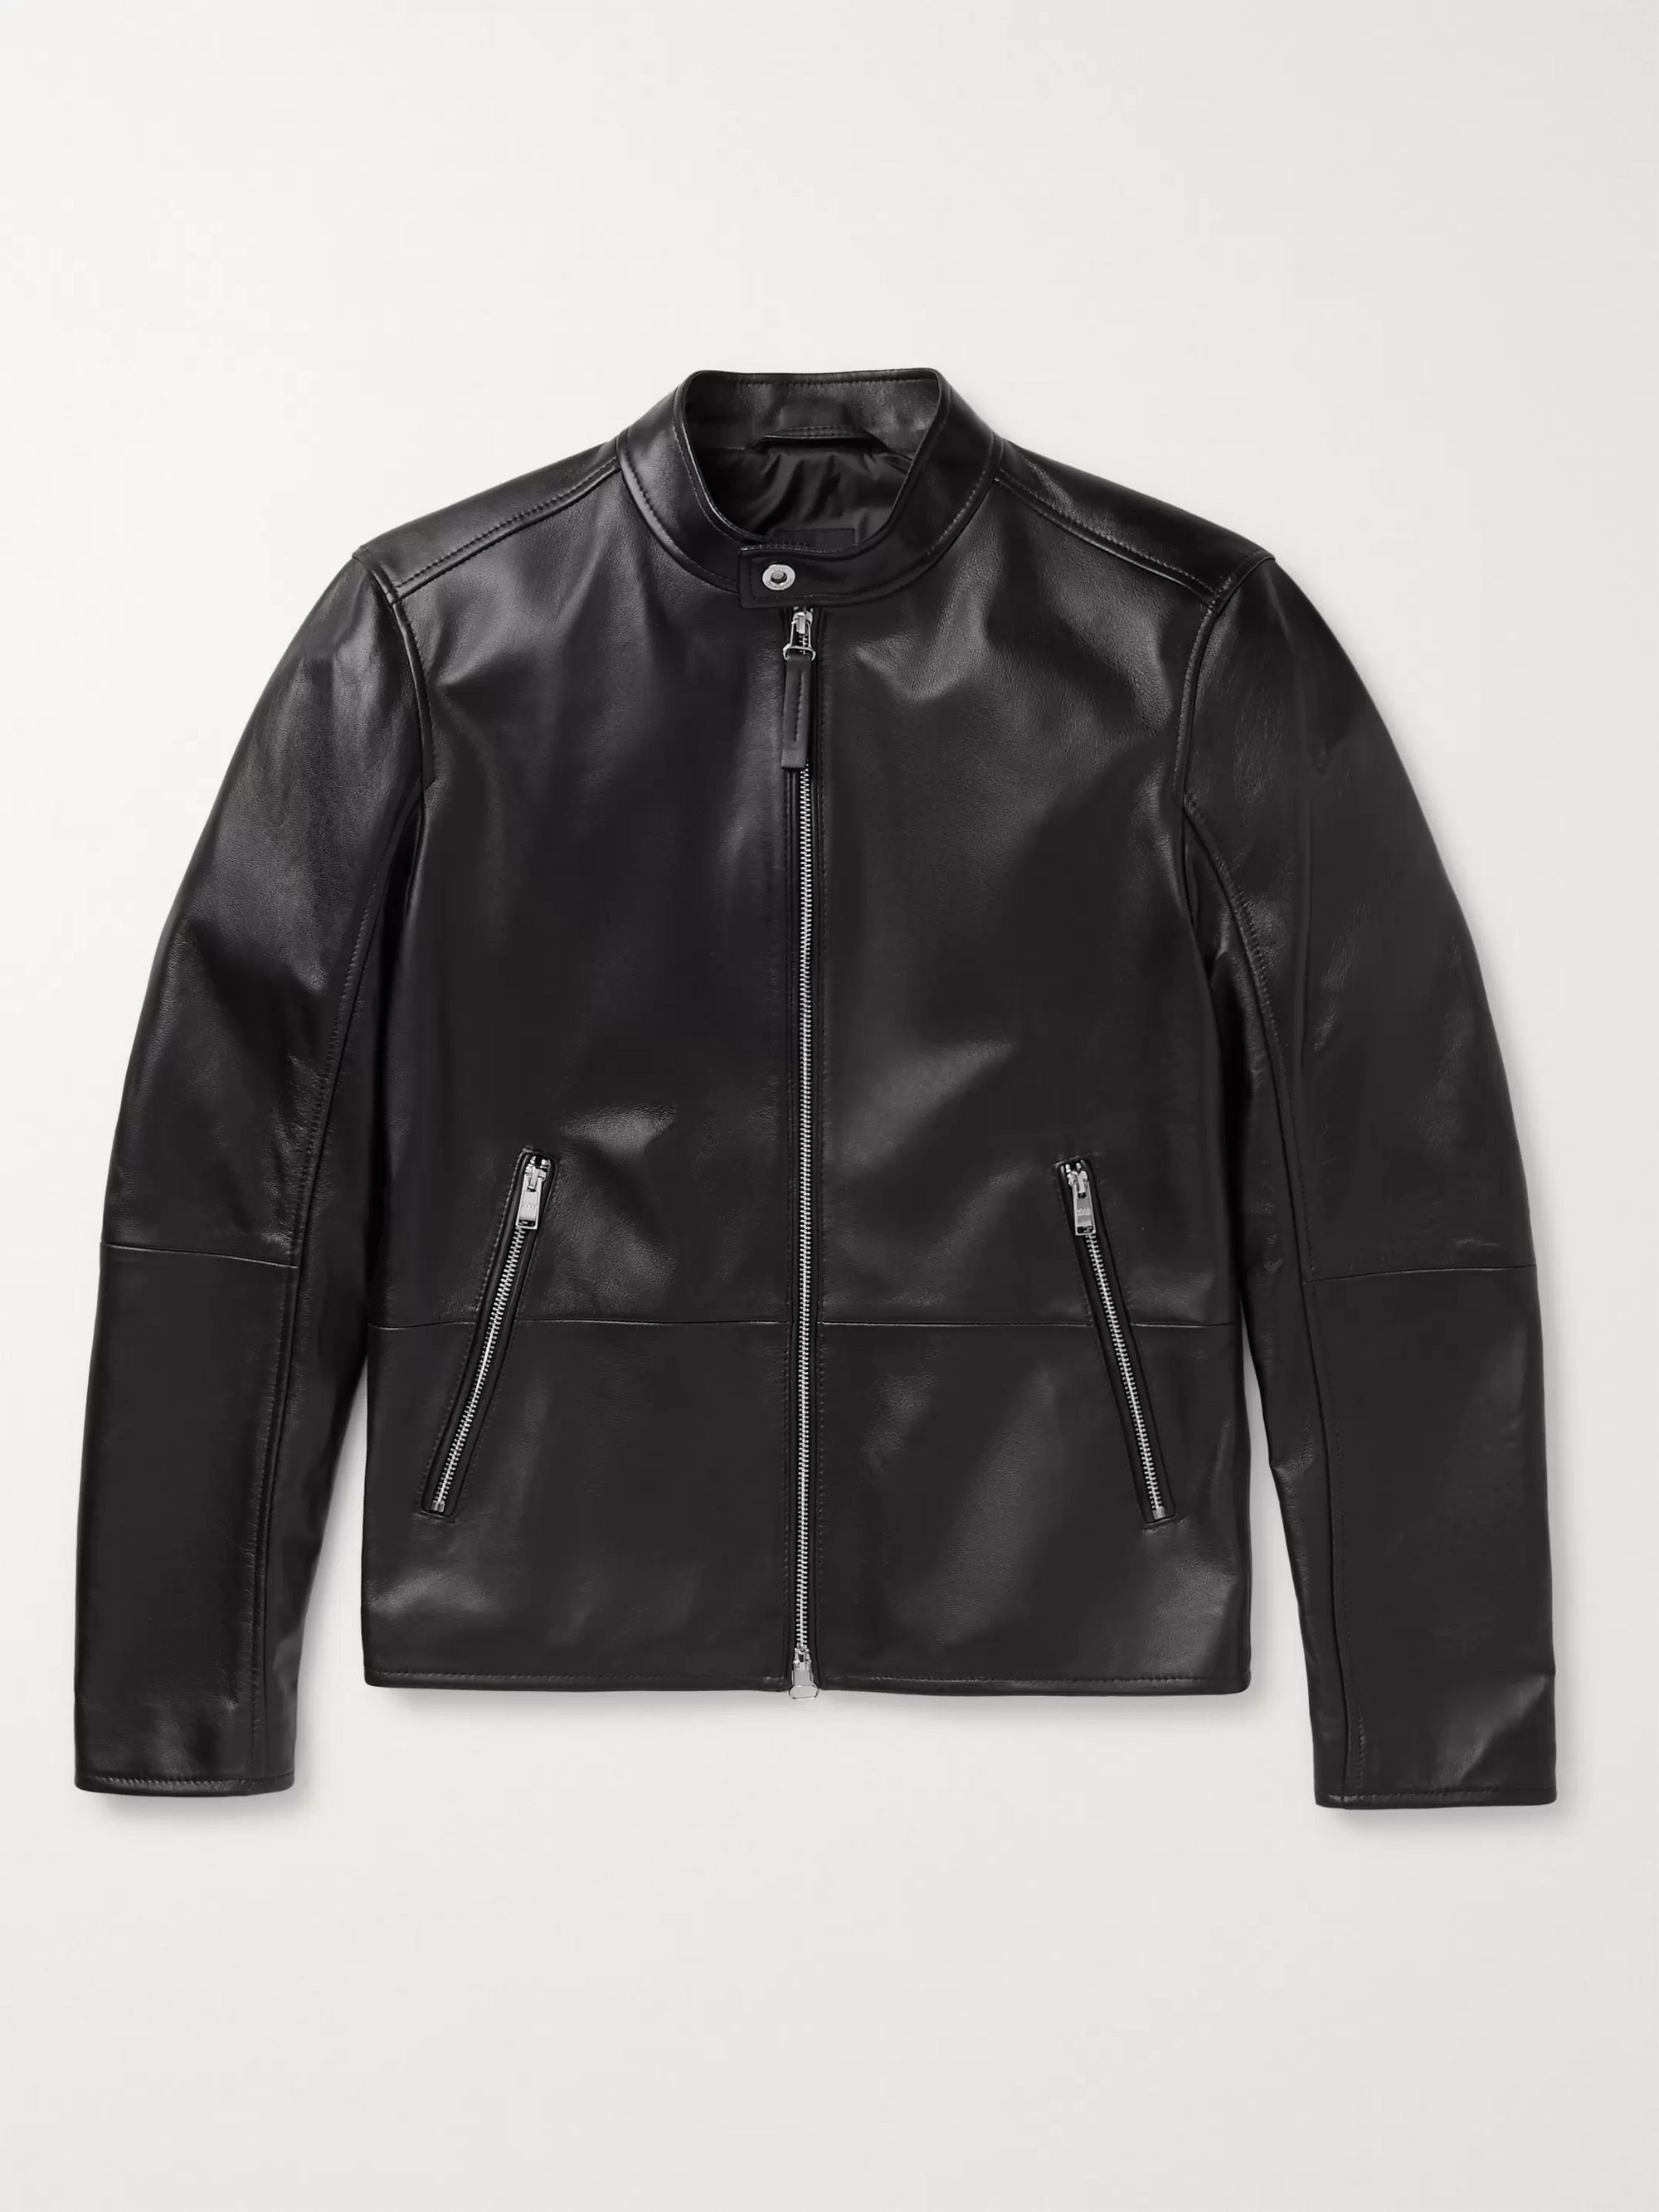 black leather jacket hugo boss